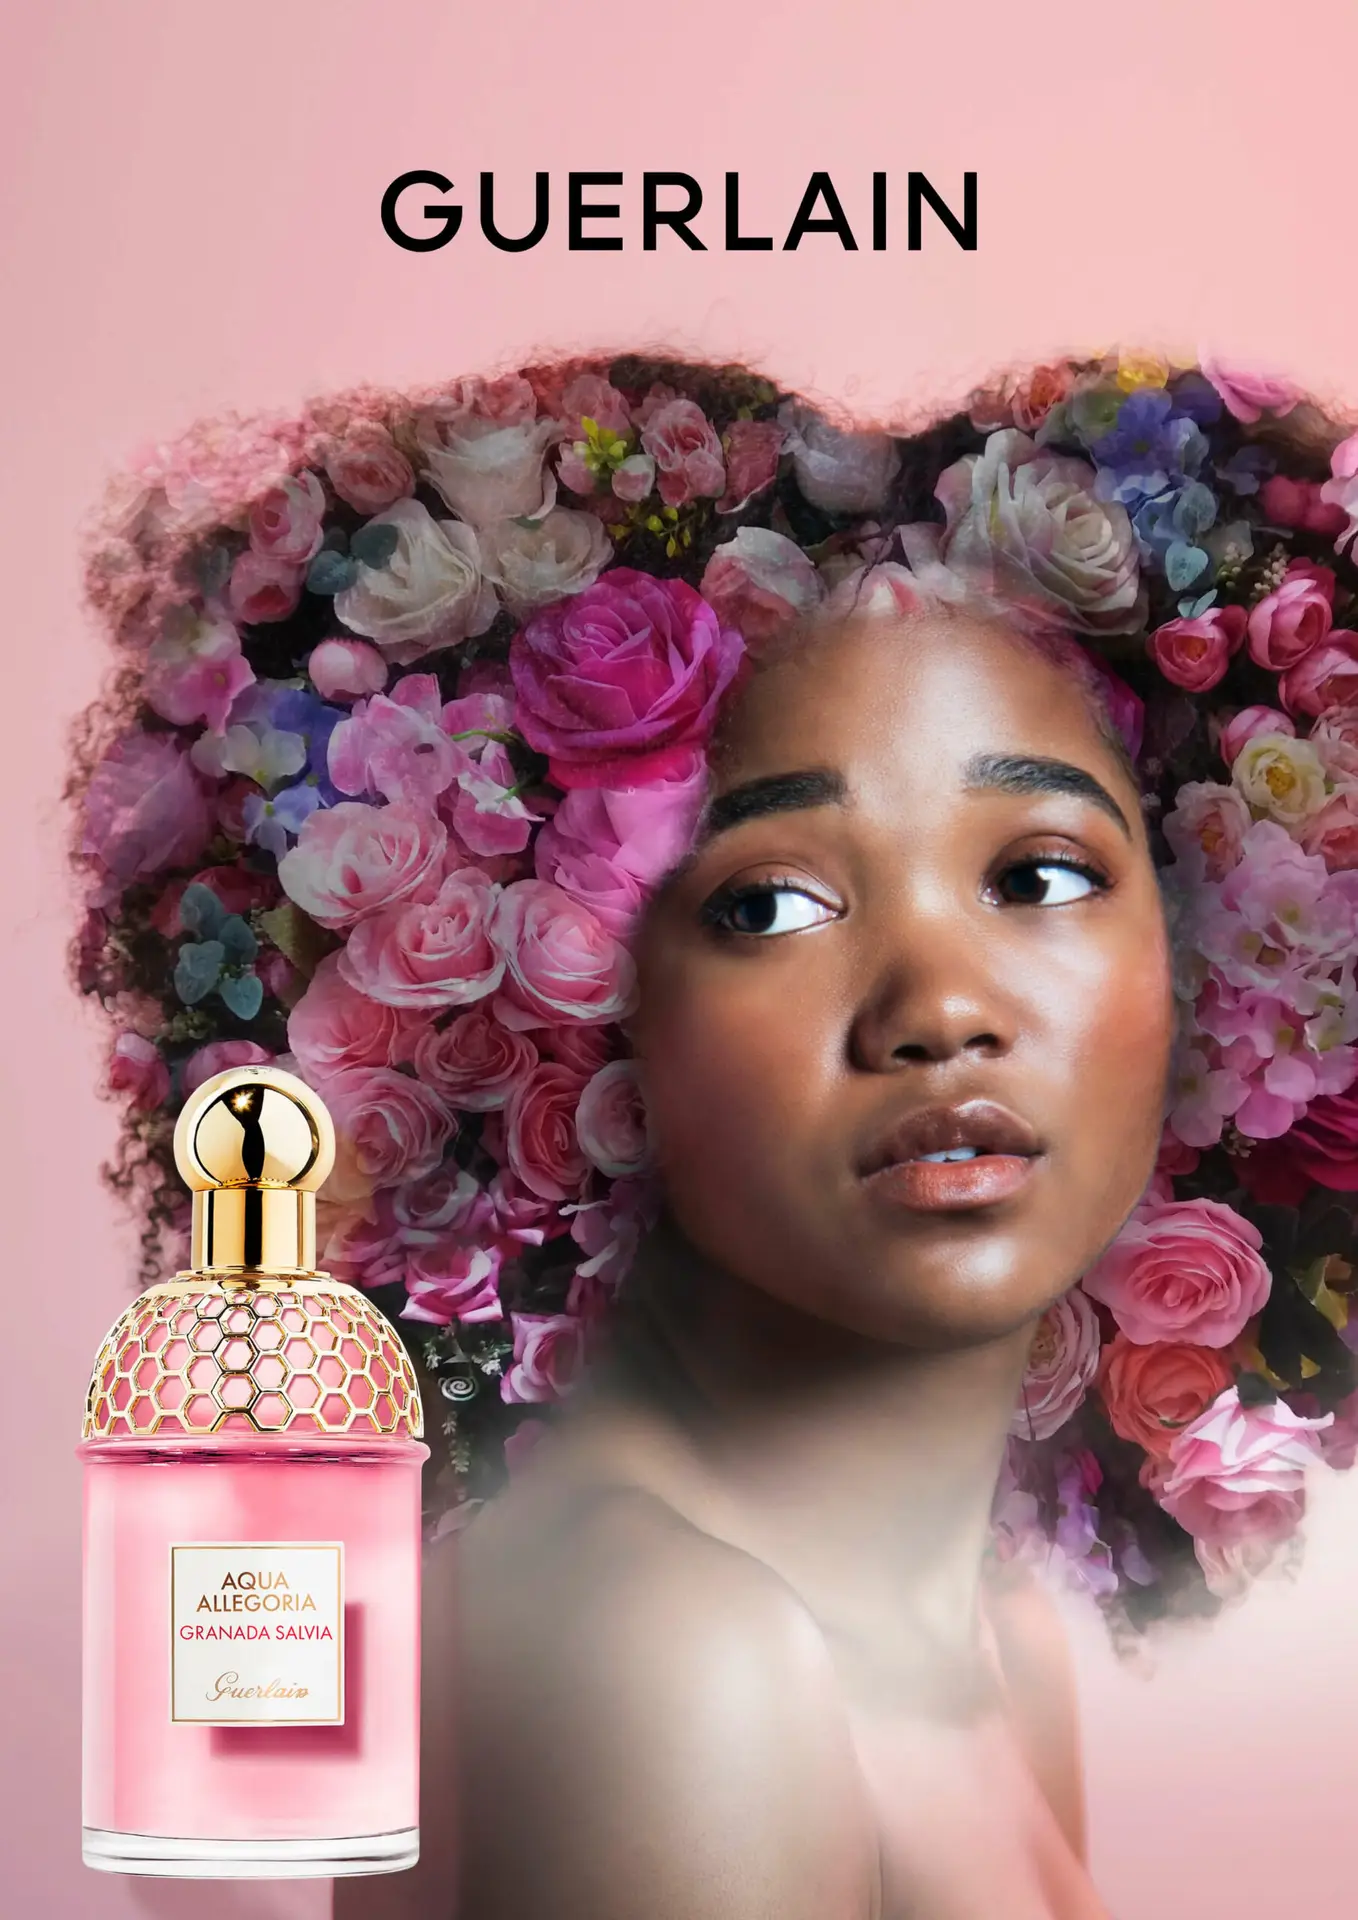 Annonce-presse fictive pour le parfum Aqua Allegoria de la marque Guerlain représentant une jeune femme noire dont la coiffure afro est remplacée par un bouquet de fleurs.